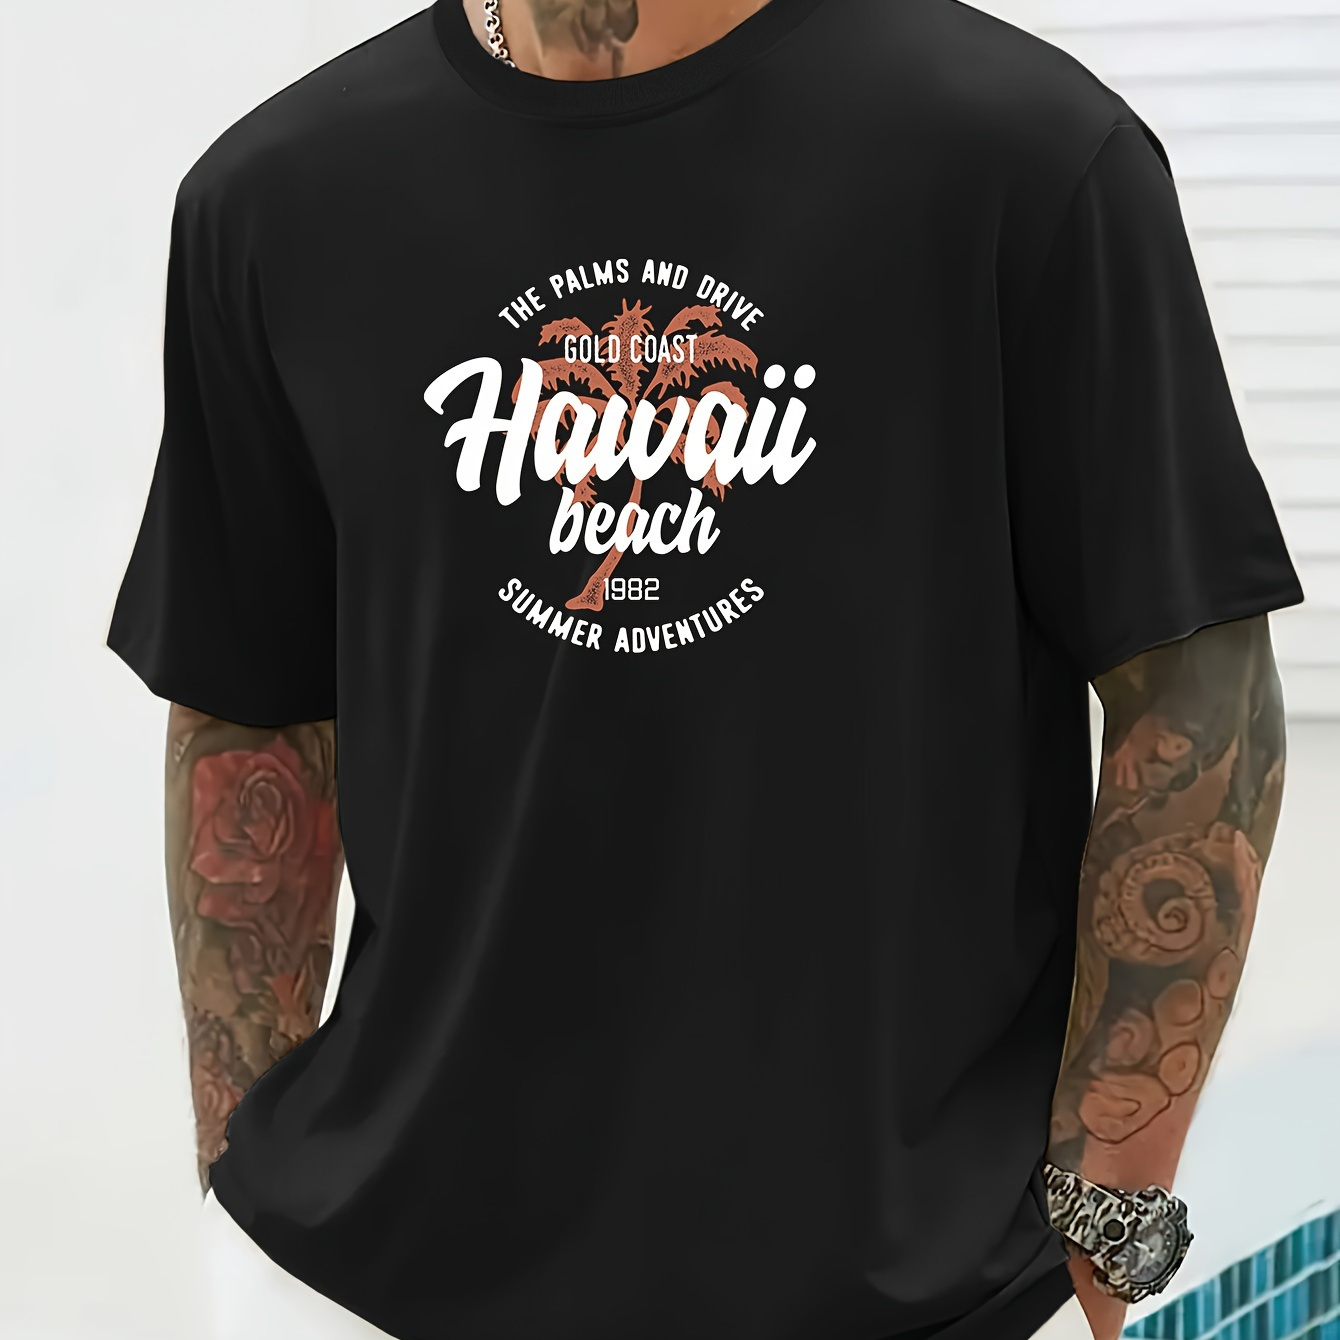 

Men's Hawaii Print Short Sleeve T-shirts, Comfy Casual Elastic Crew Neck Tops For Men's Outdoor Activities